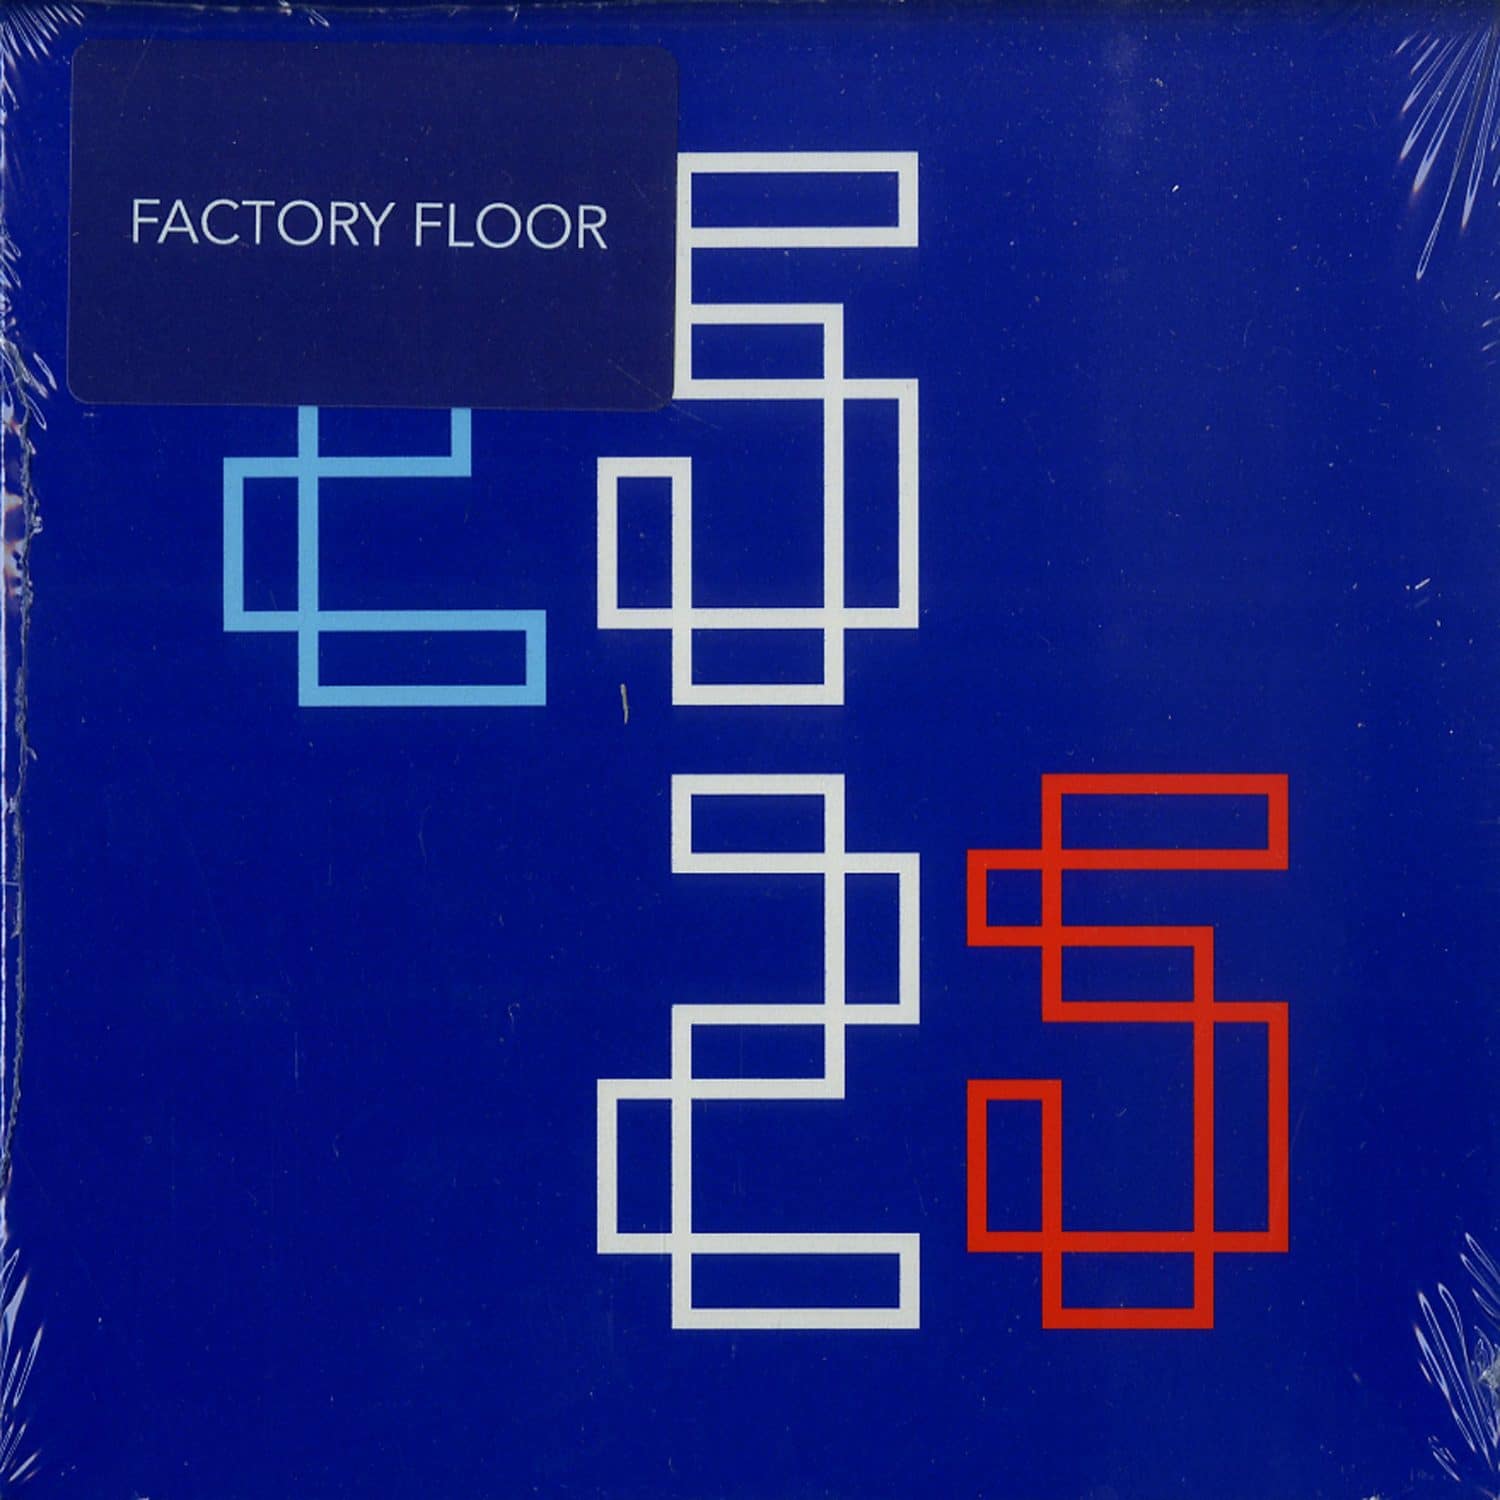 Factory Floor - 25 25 